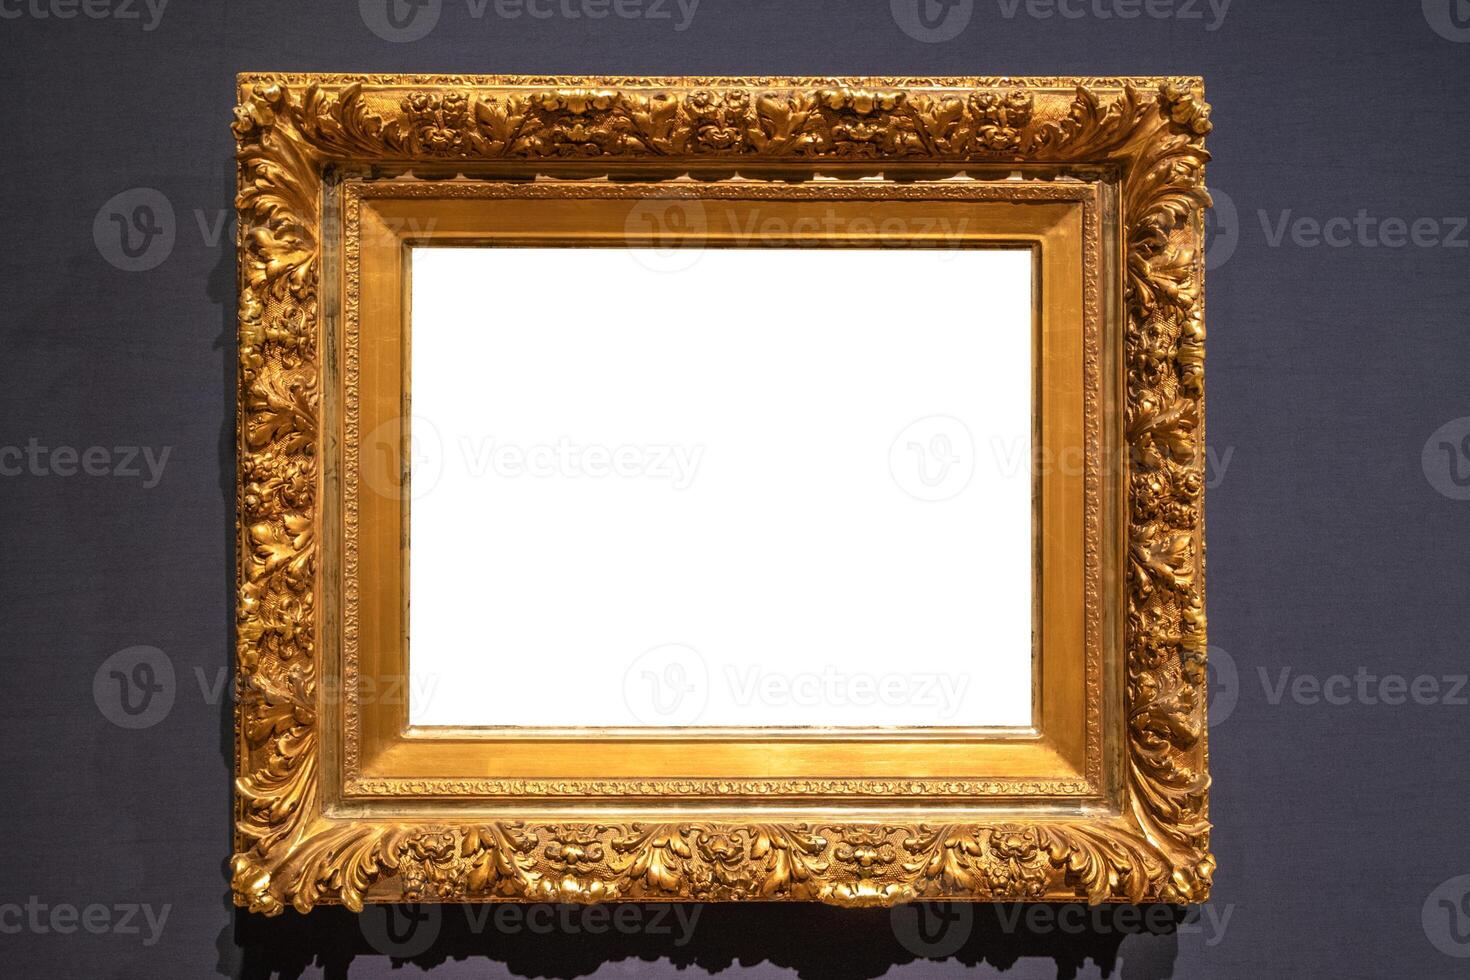 antiguo dorado tallado imagen marco en pared foto